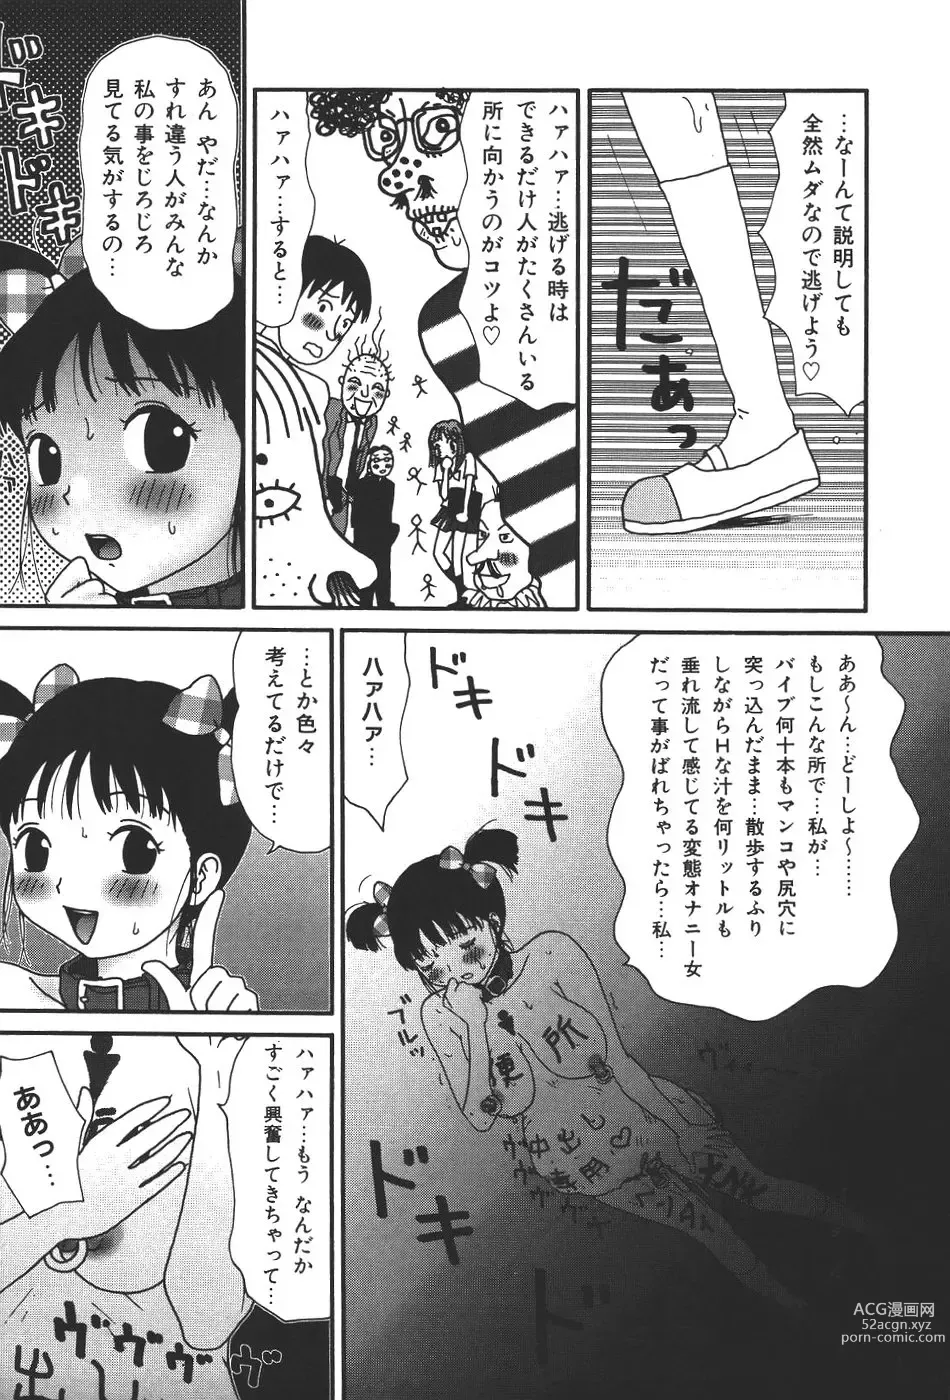 Page 158 of doujinshi Maru 17 Seventeen